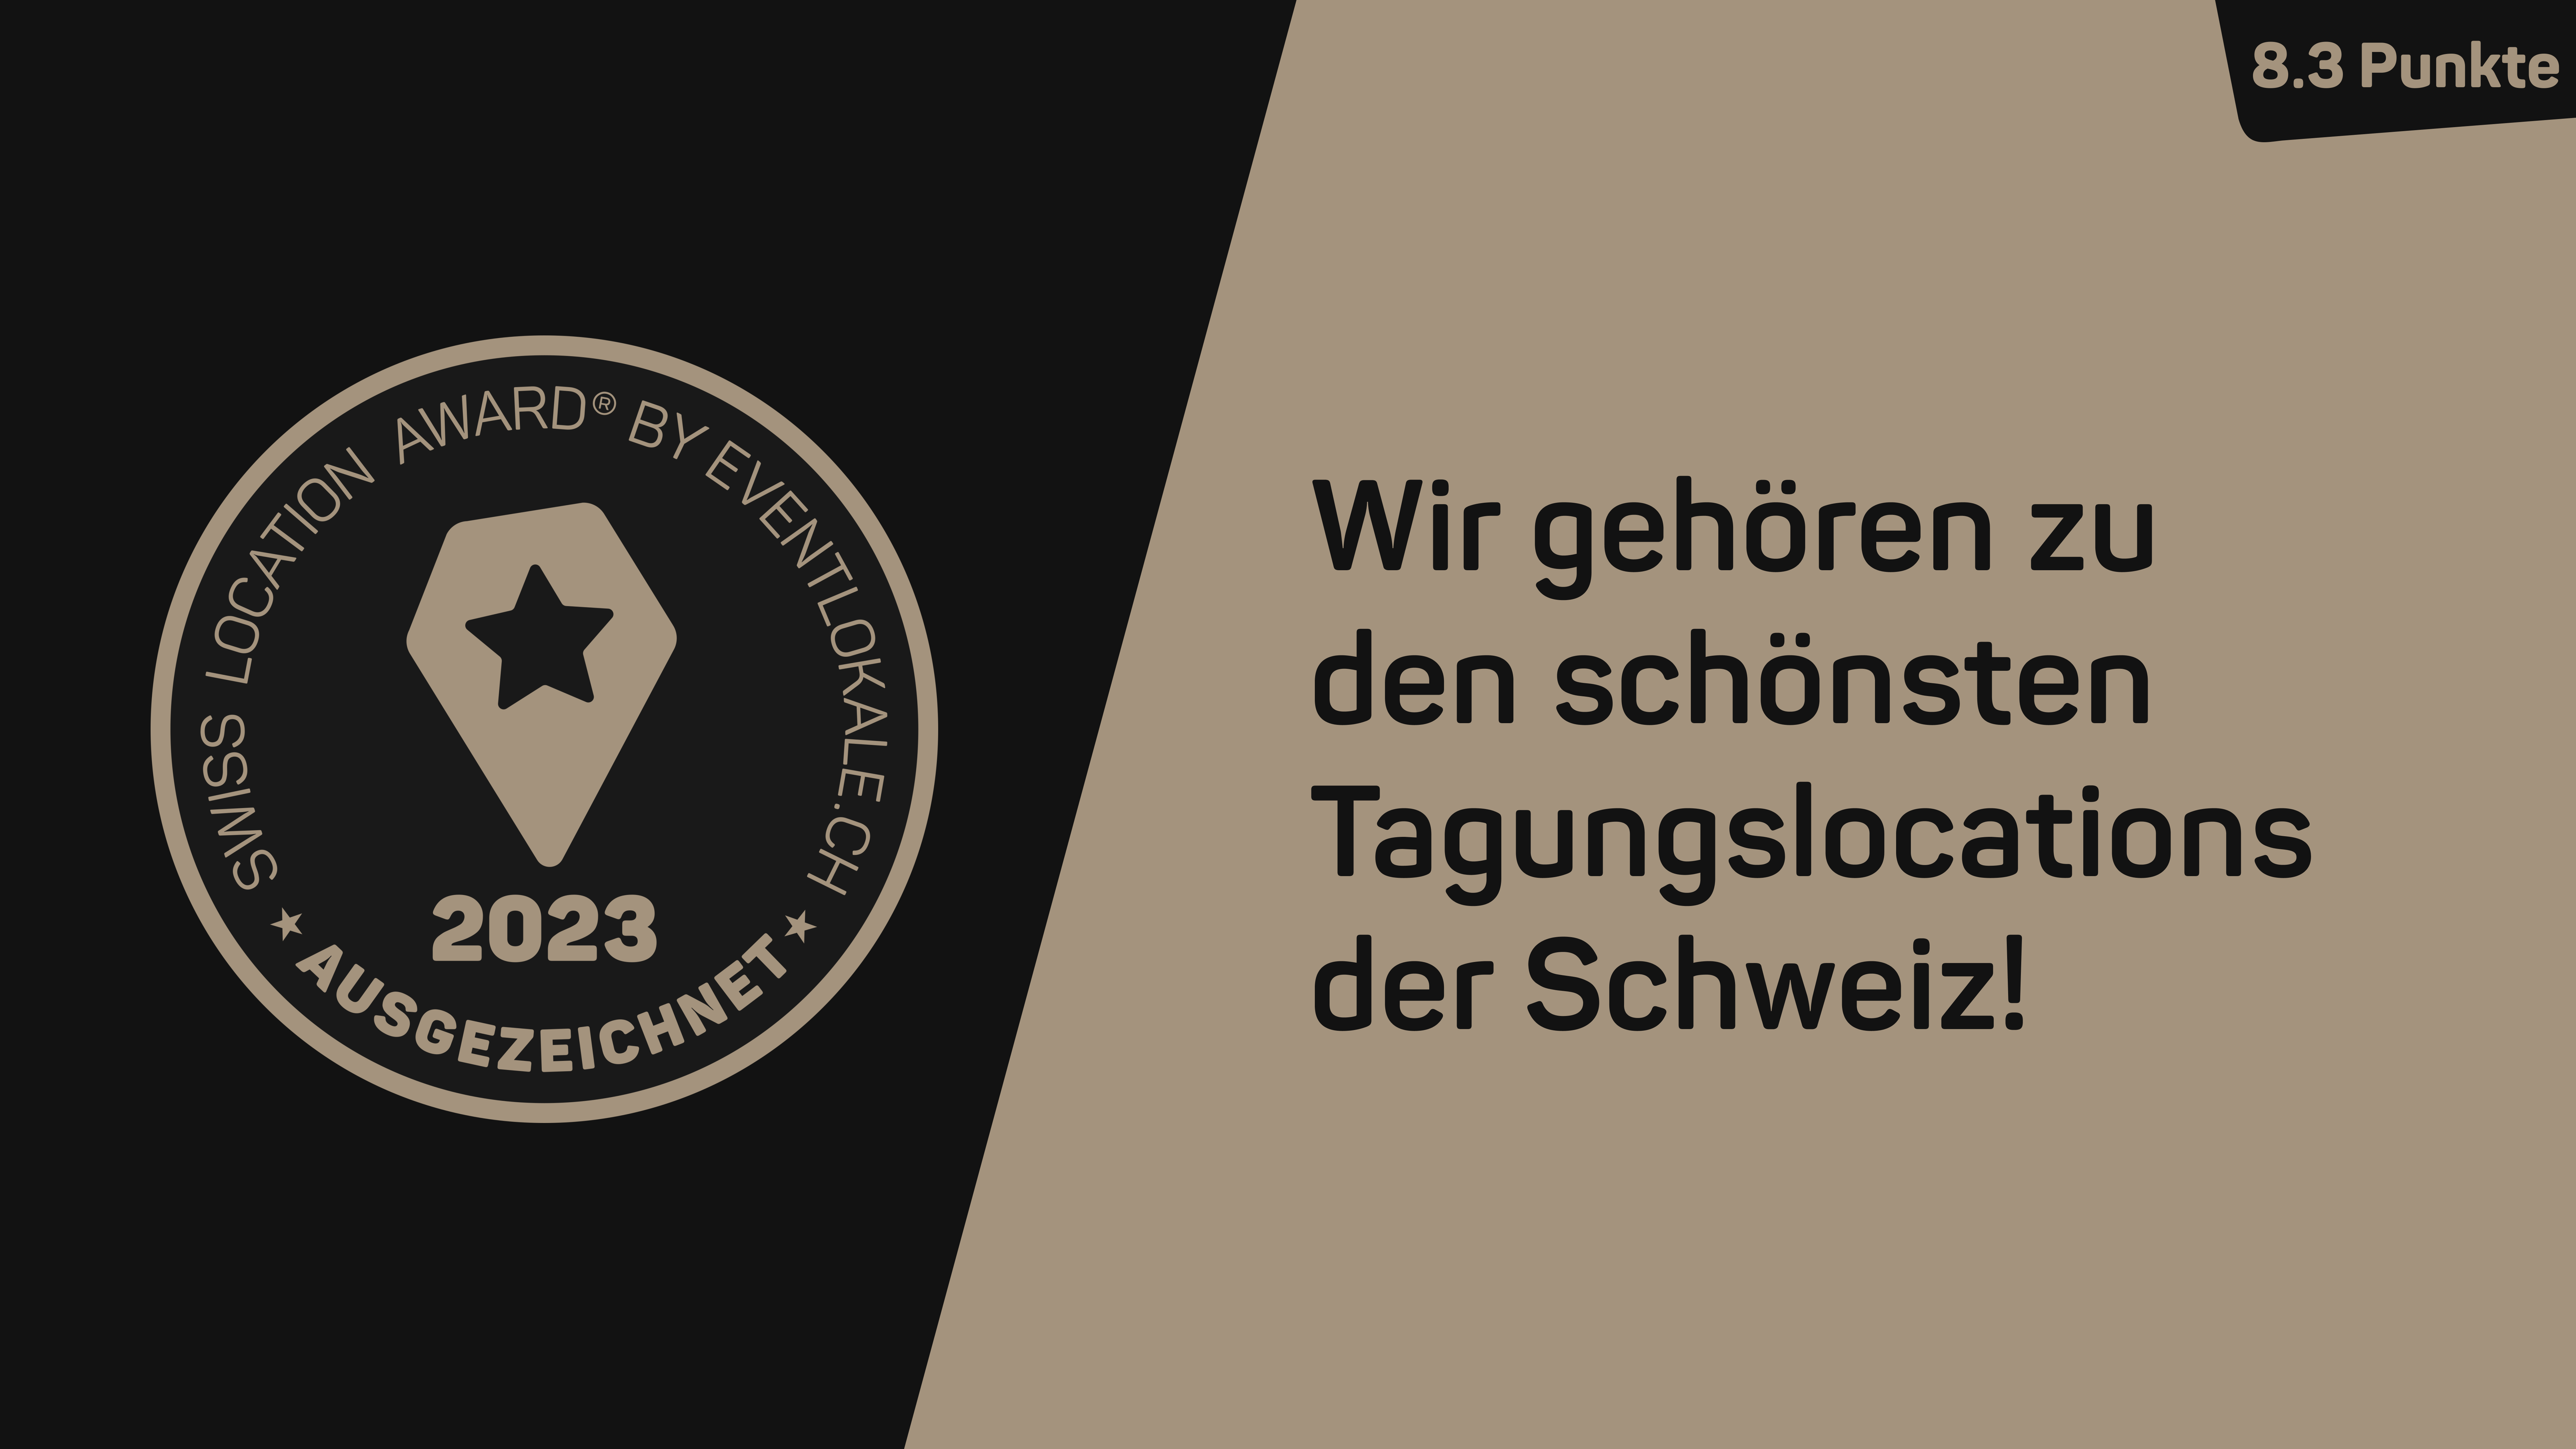 Swiss Location Award - ausgezeichnete Tagungslocation! Voting 2023